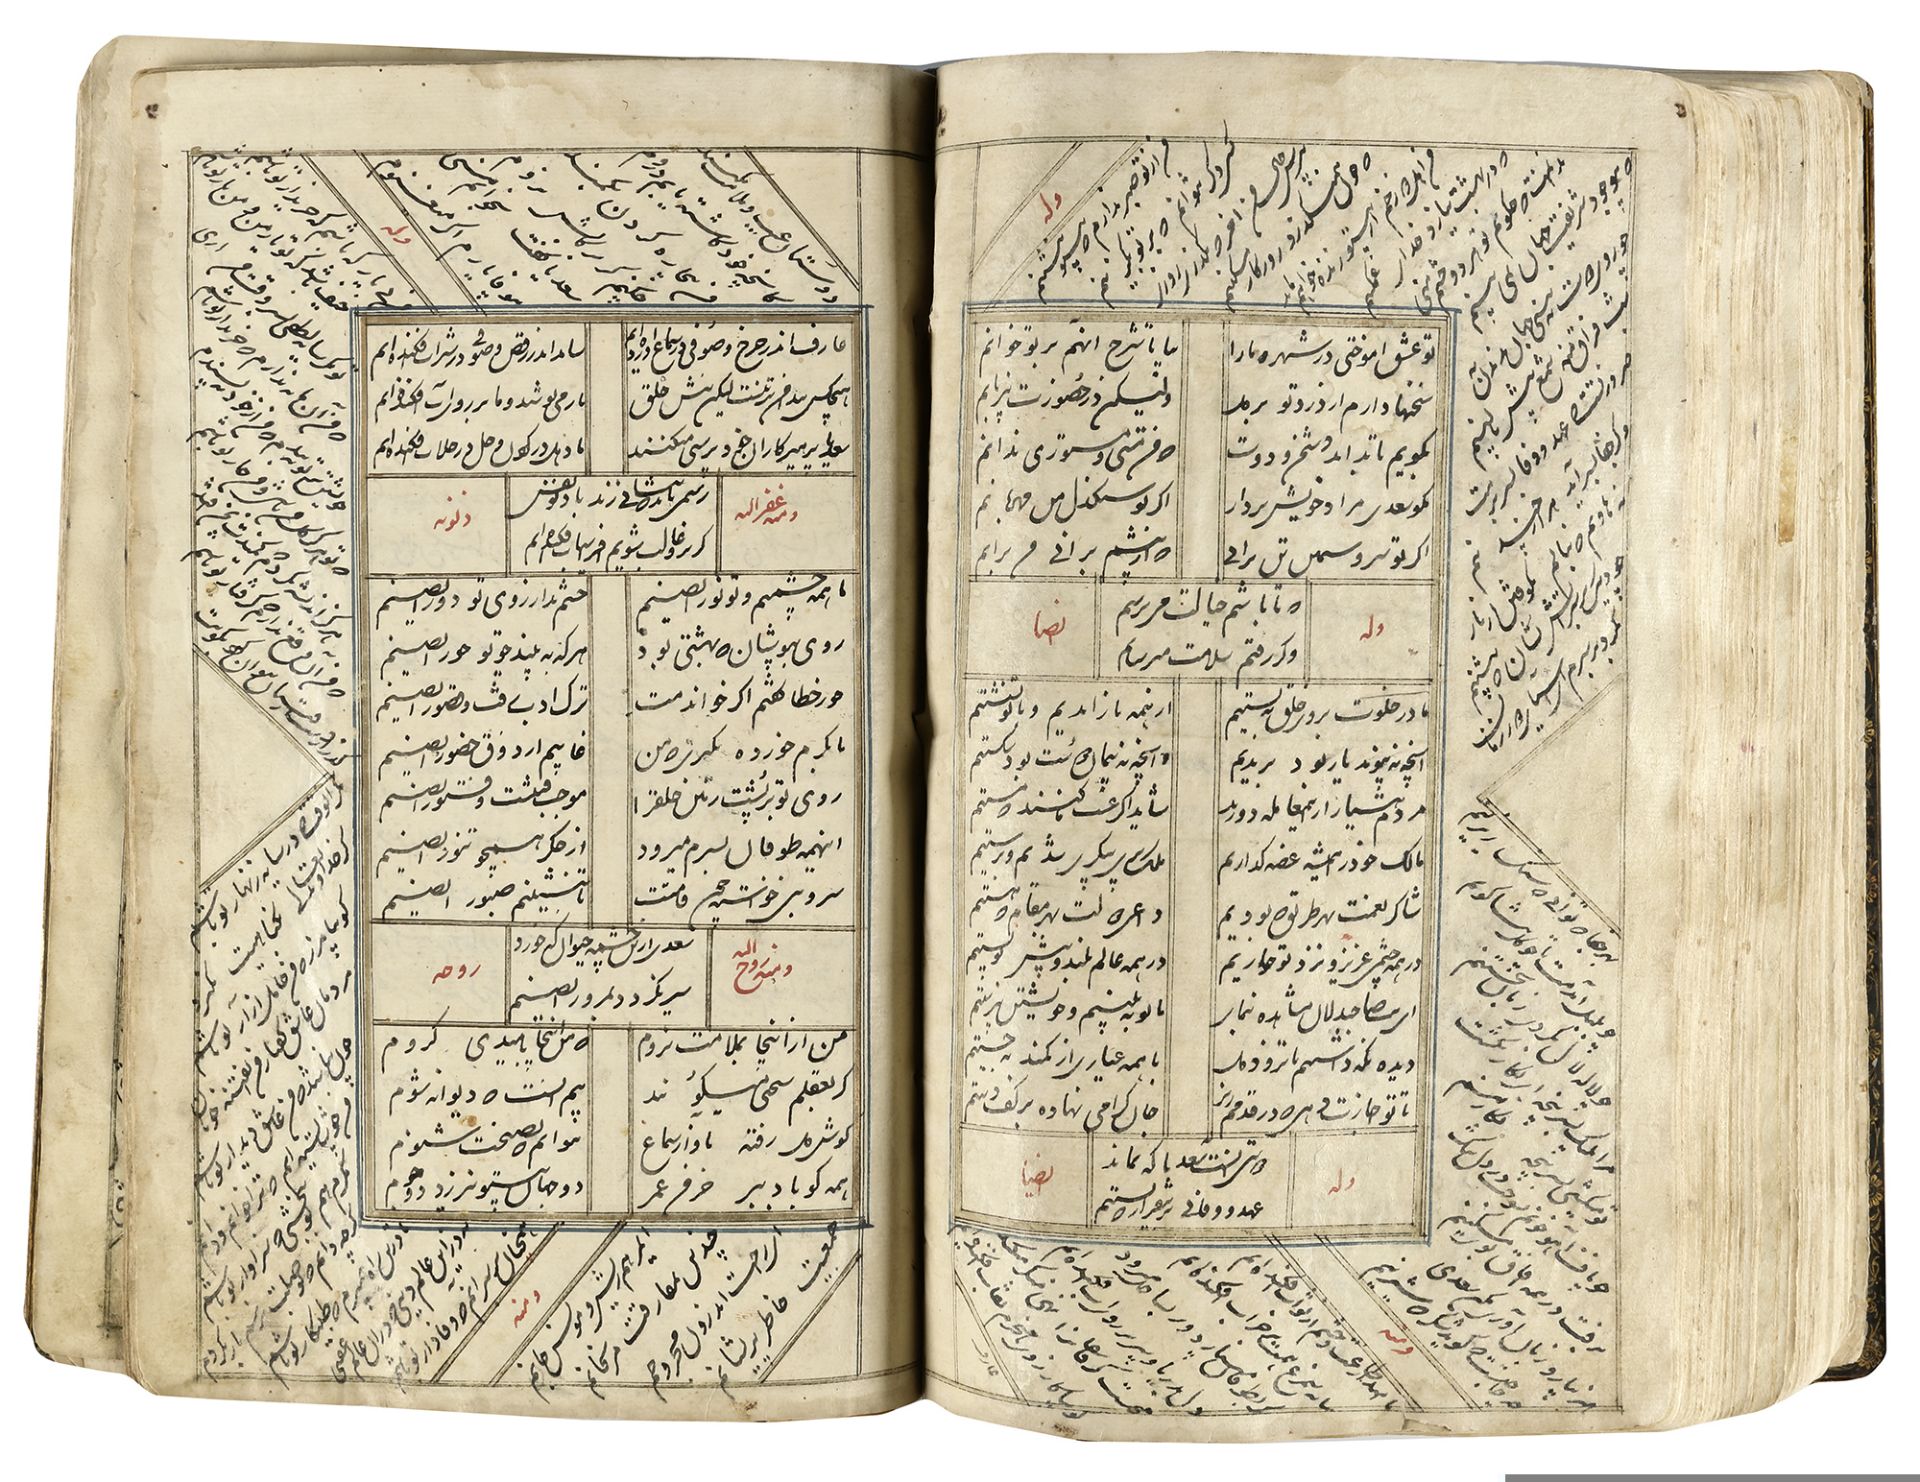 A COMPLETE WORK OF SAADI, KOLIYAT SAADI, PERSIA-QAJAR, 1235 AH/1819 AD - Image 6 of 11